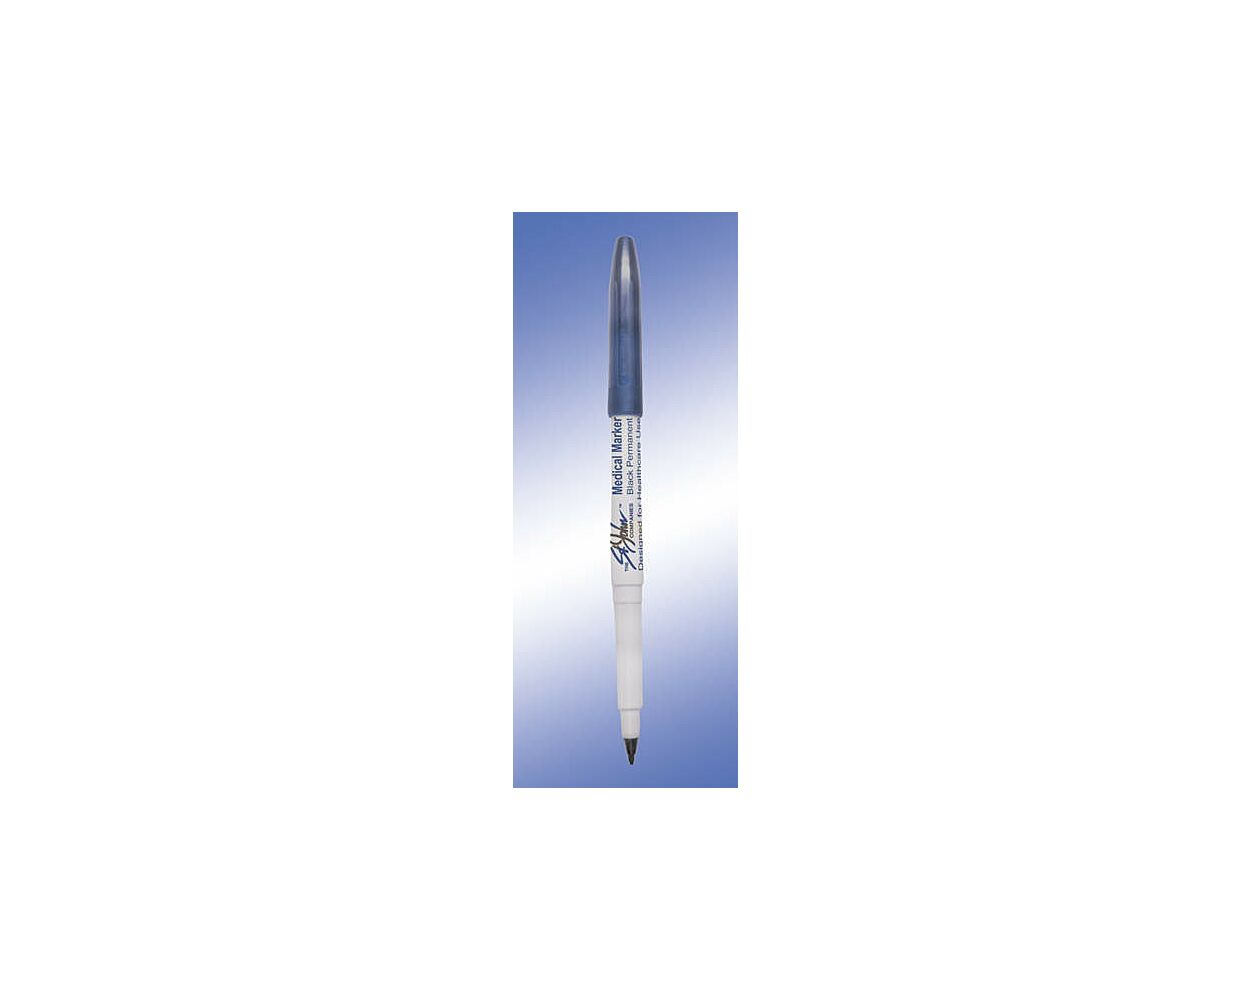 Black PLASTIC Sterile Pen/Marker - PDC (STER-PEN)